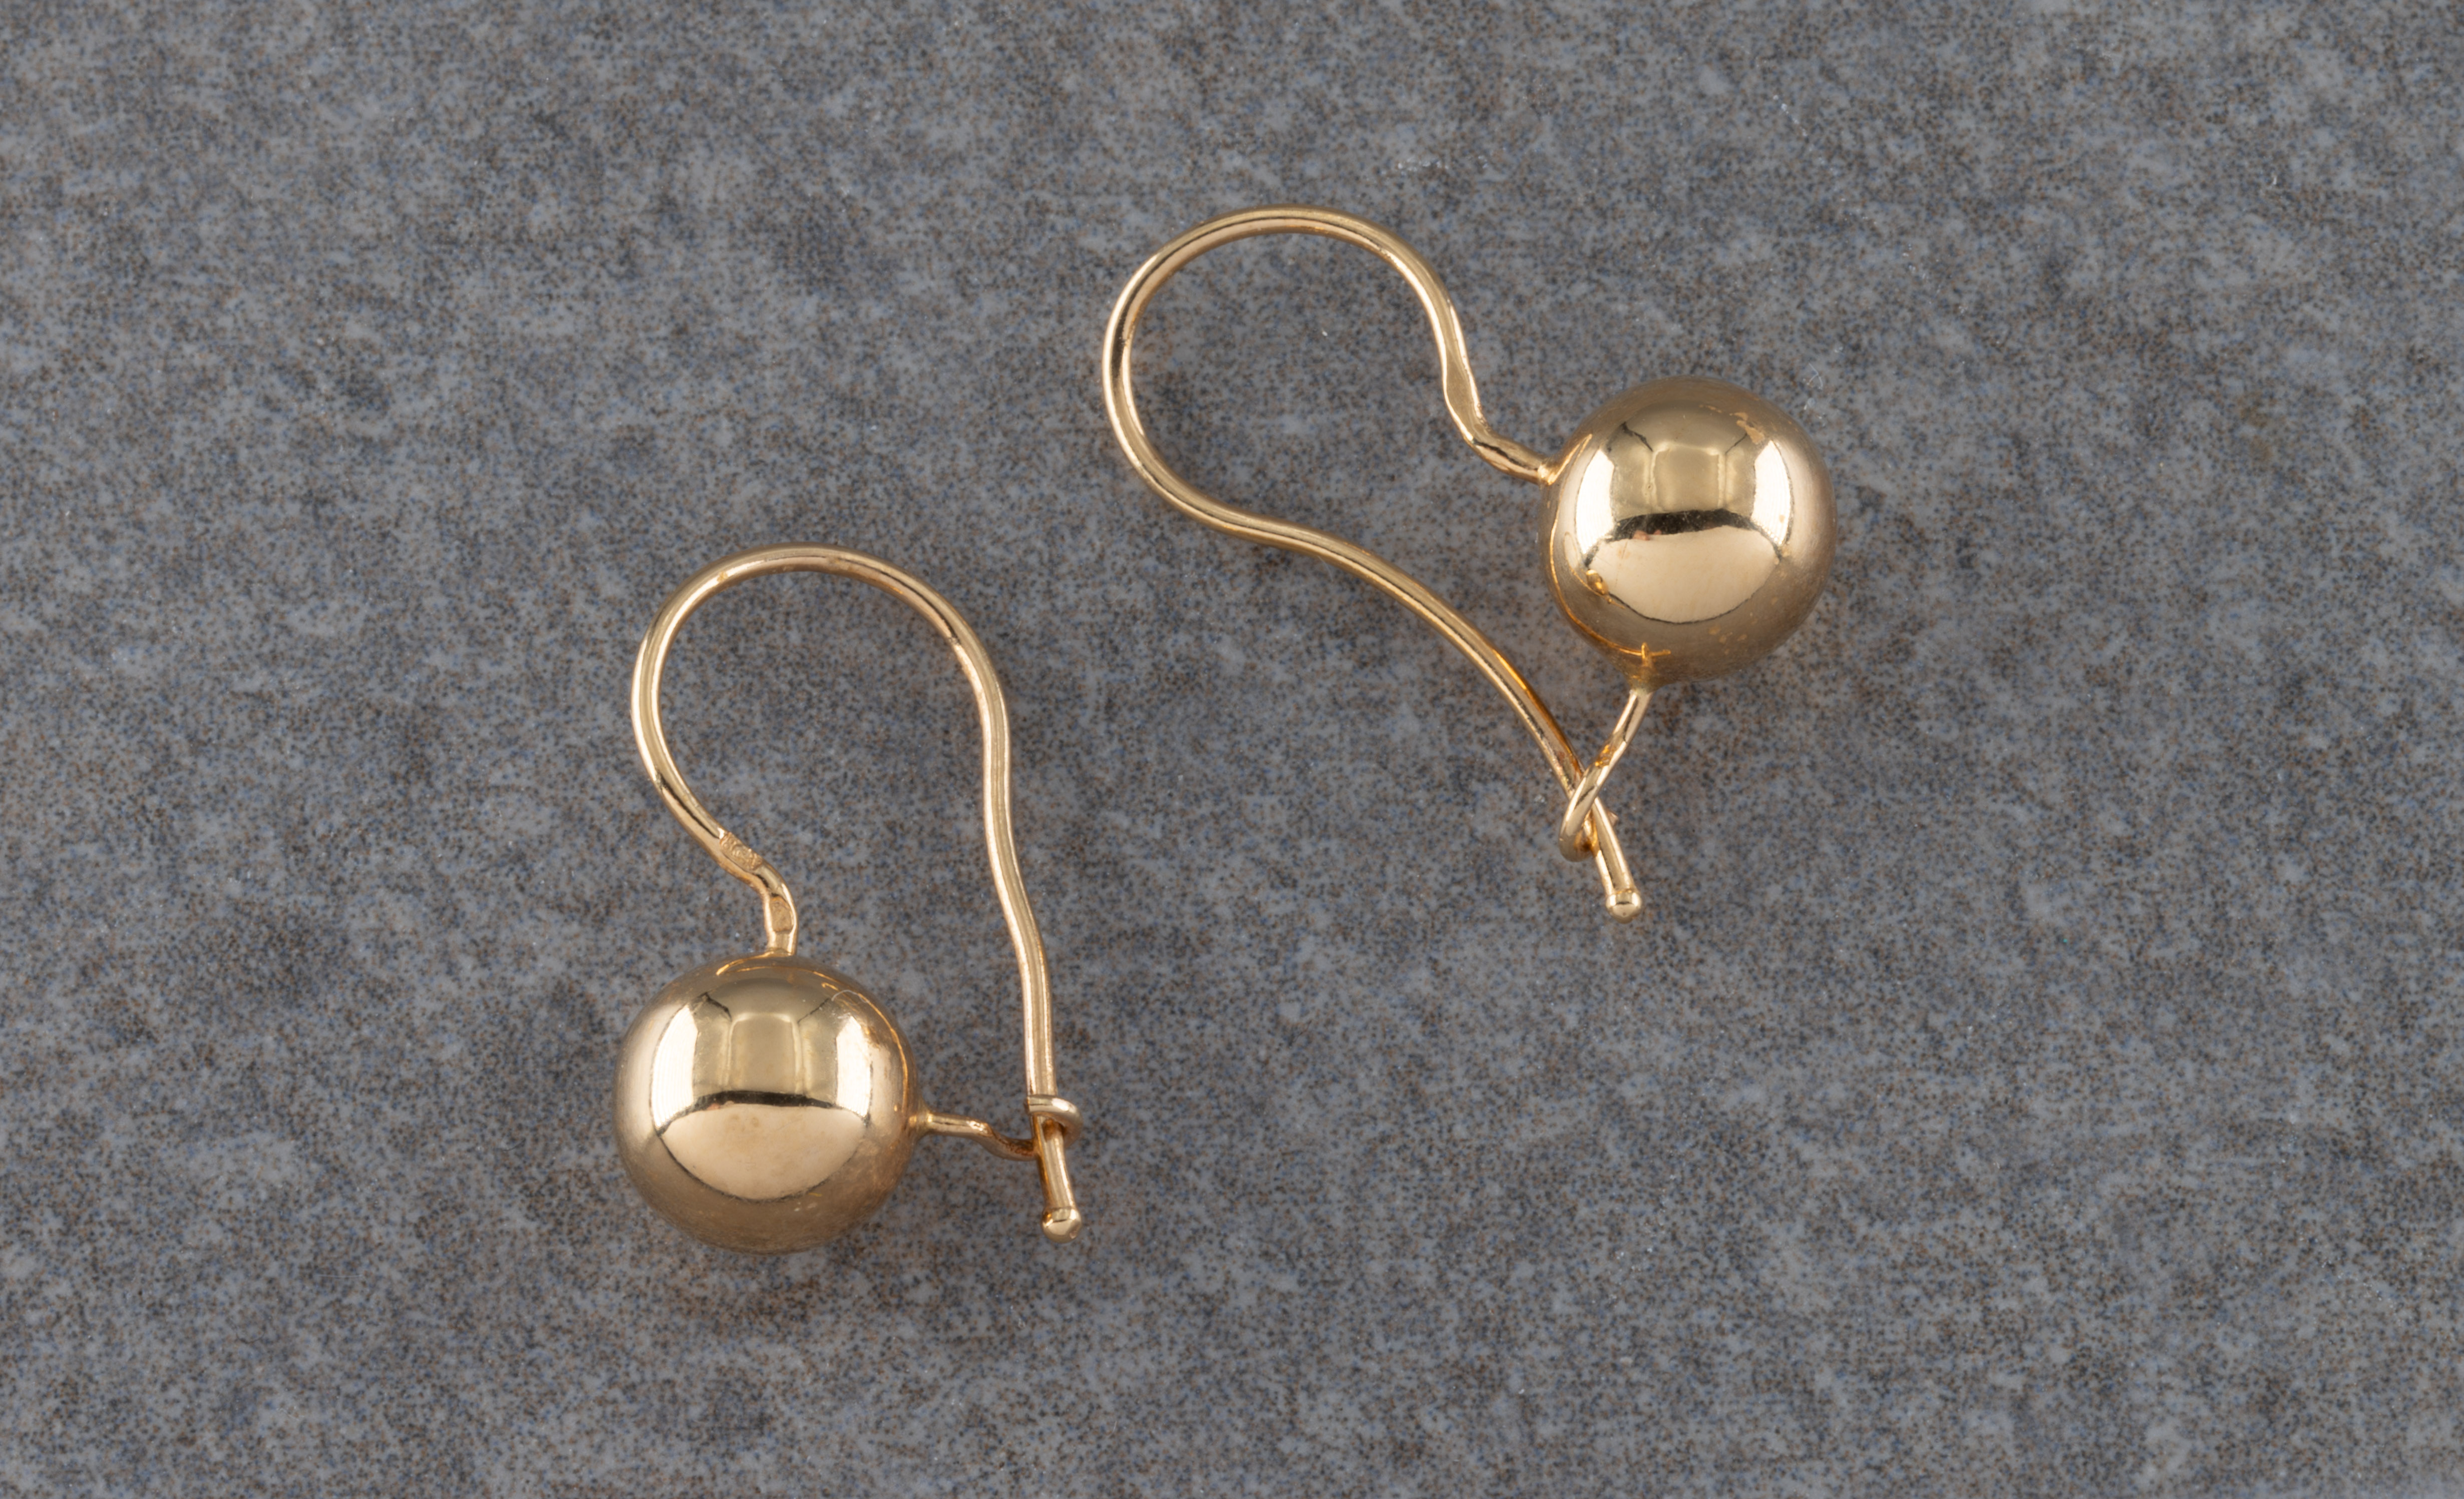 A pair of yellow metal spherical earrings